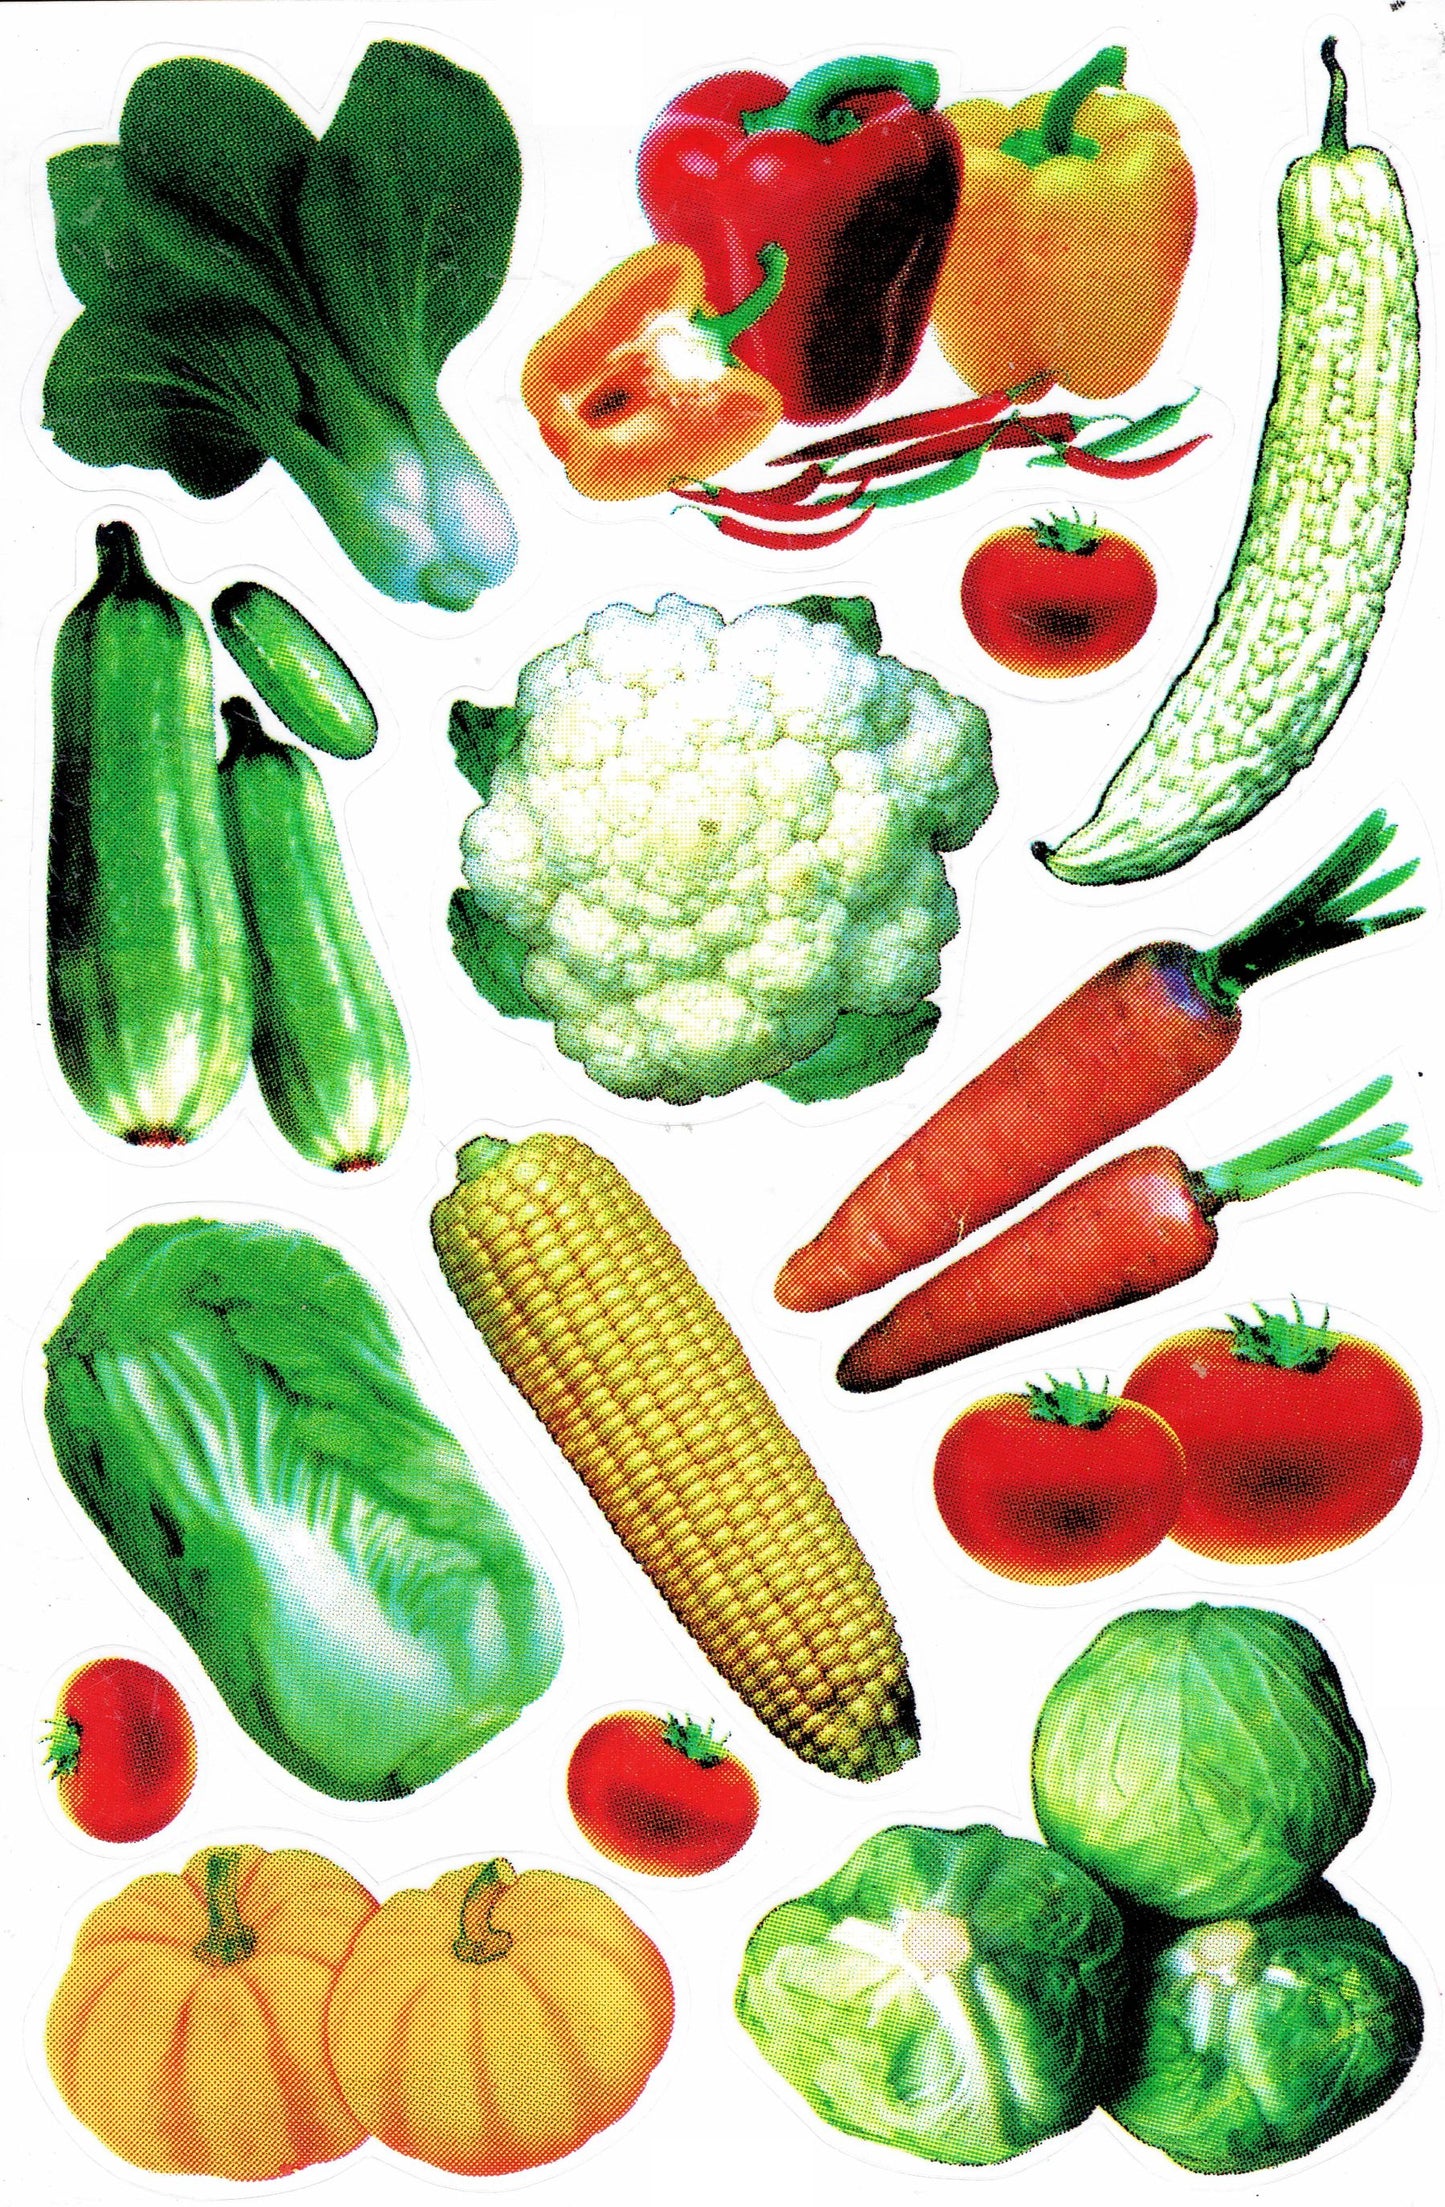 Gemüse Maiskolben Kohl Kürbis Blumenkohl Tomate Aufkleber Sticker für Kinder Basteln Kindergarten Geburtstag 1 Bogen 371